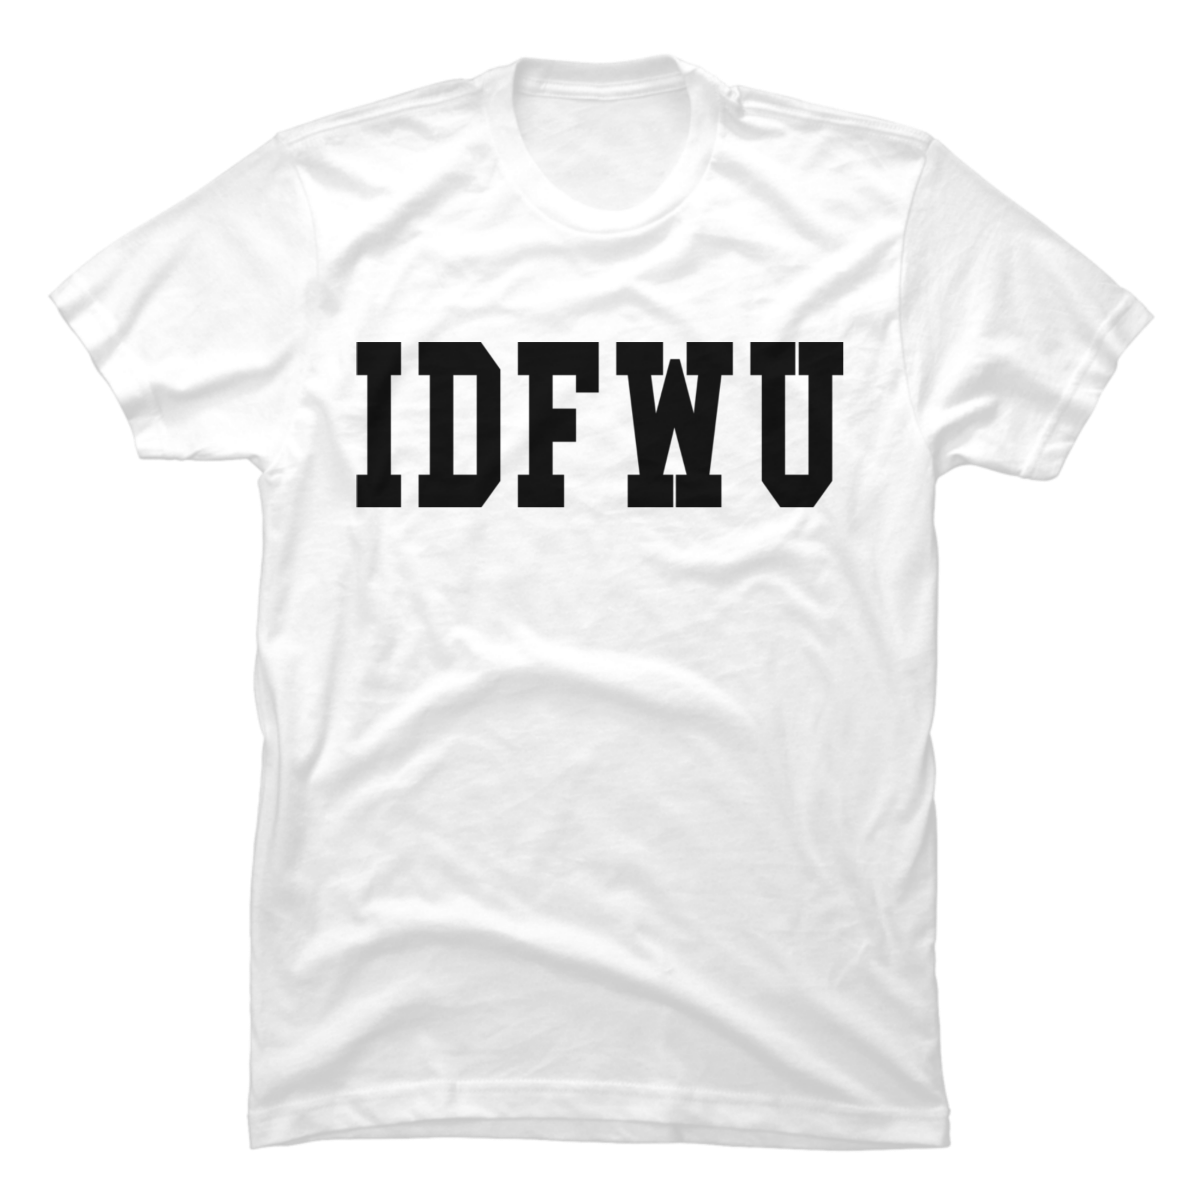 idfwu shirt